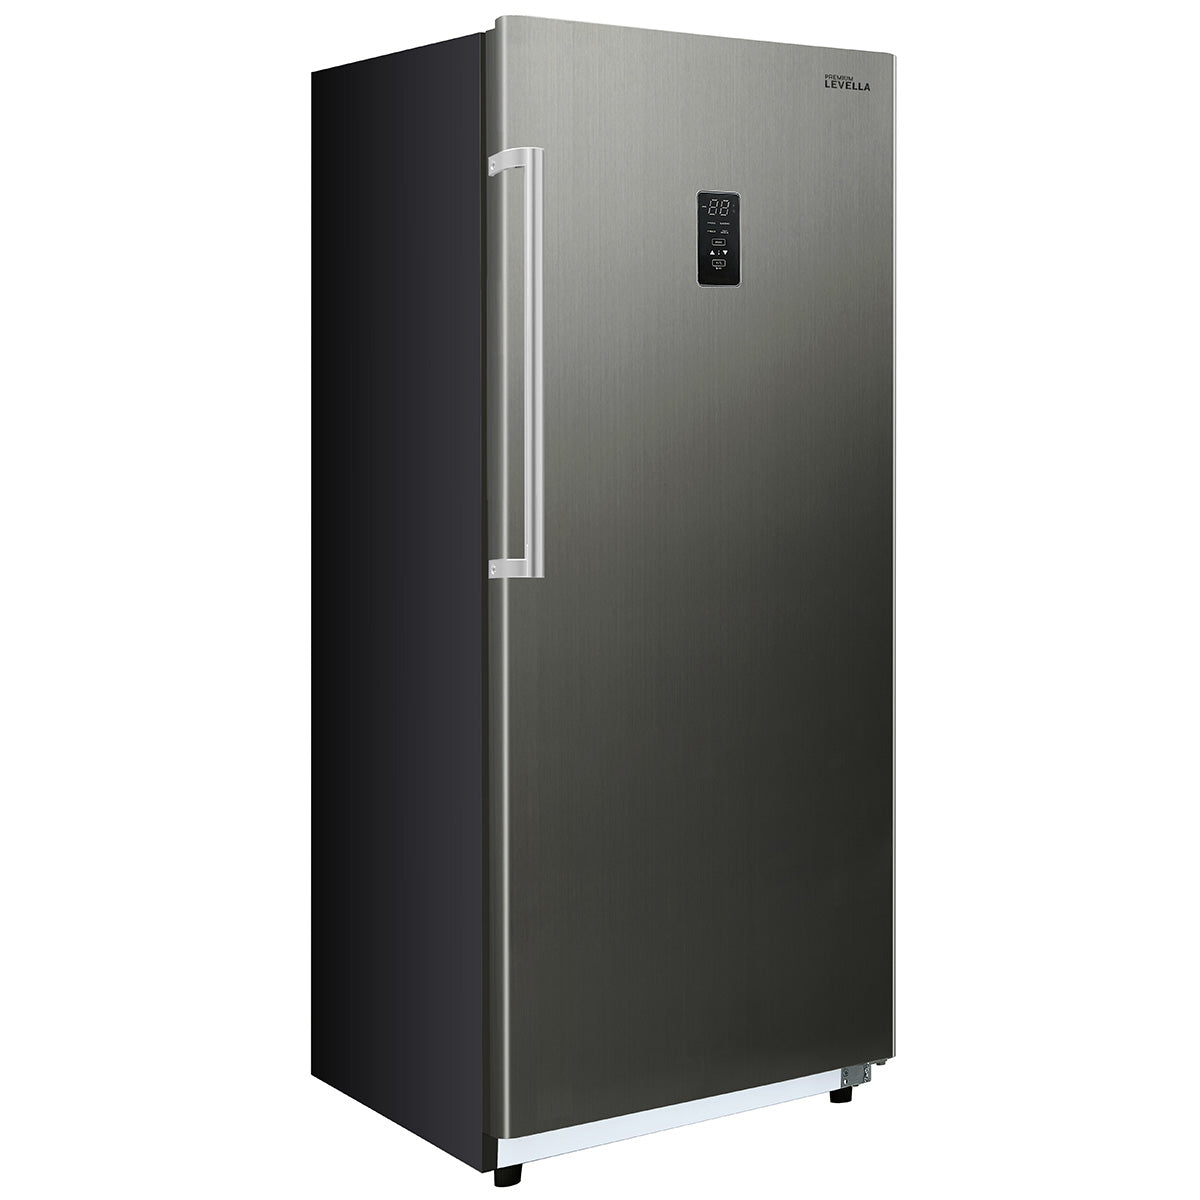 Refrigerador sin Congelador Whirlpool 17.7 pies Acero Inoxidable